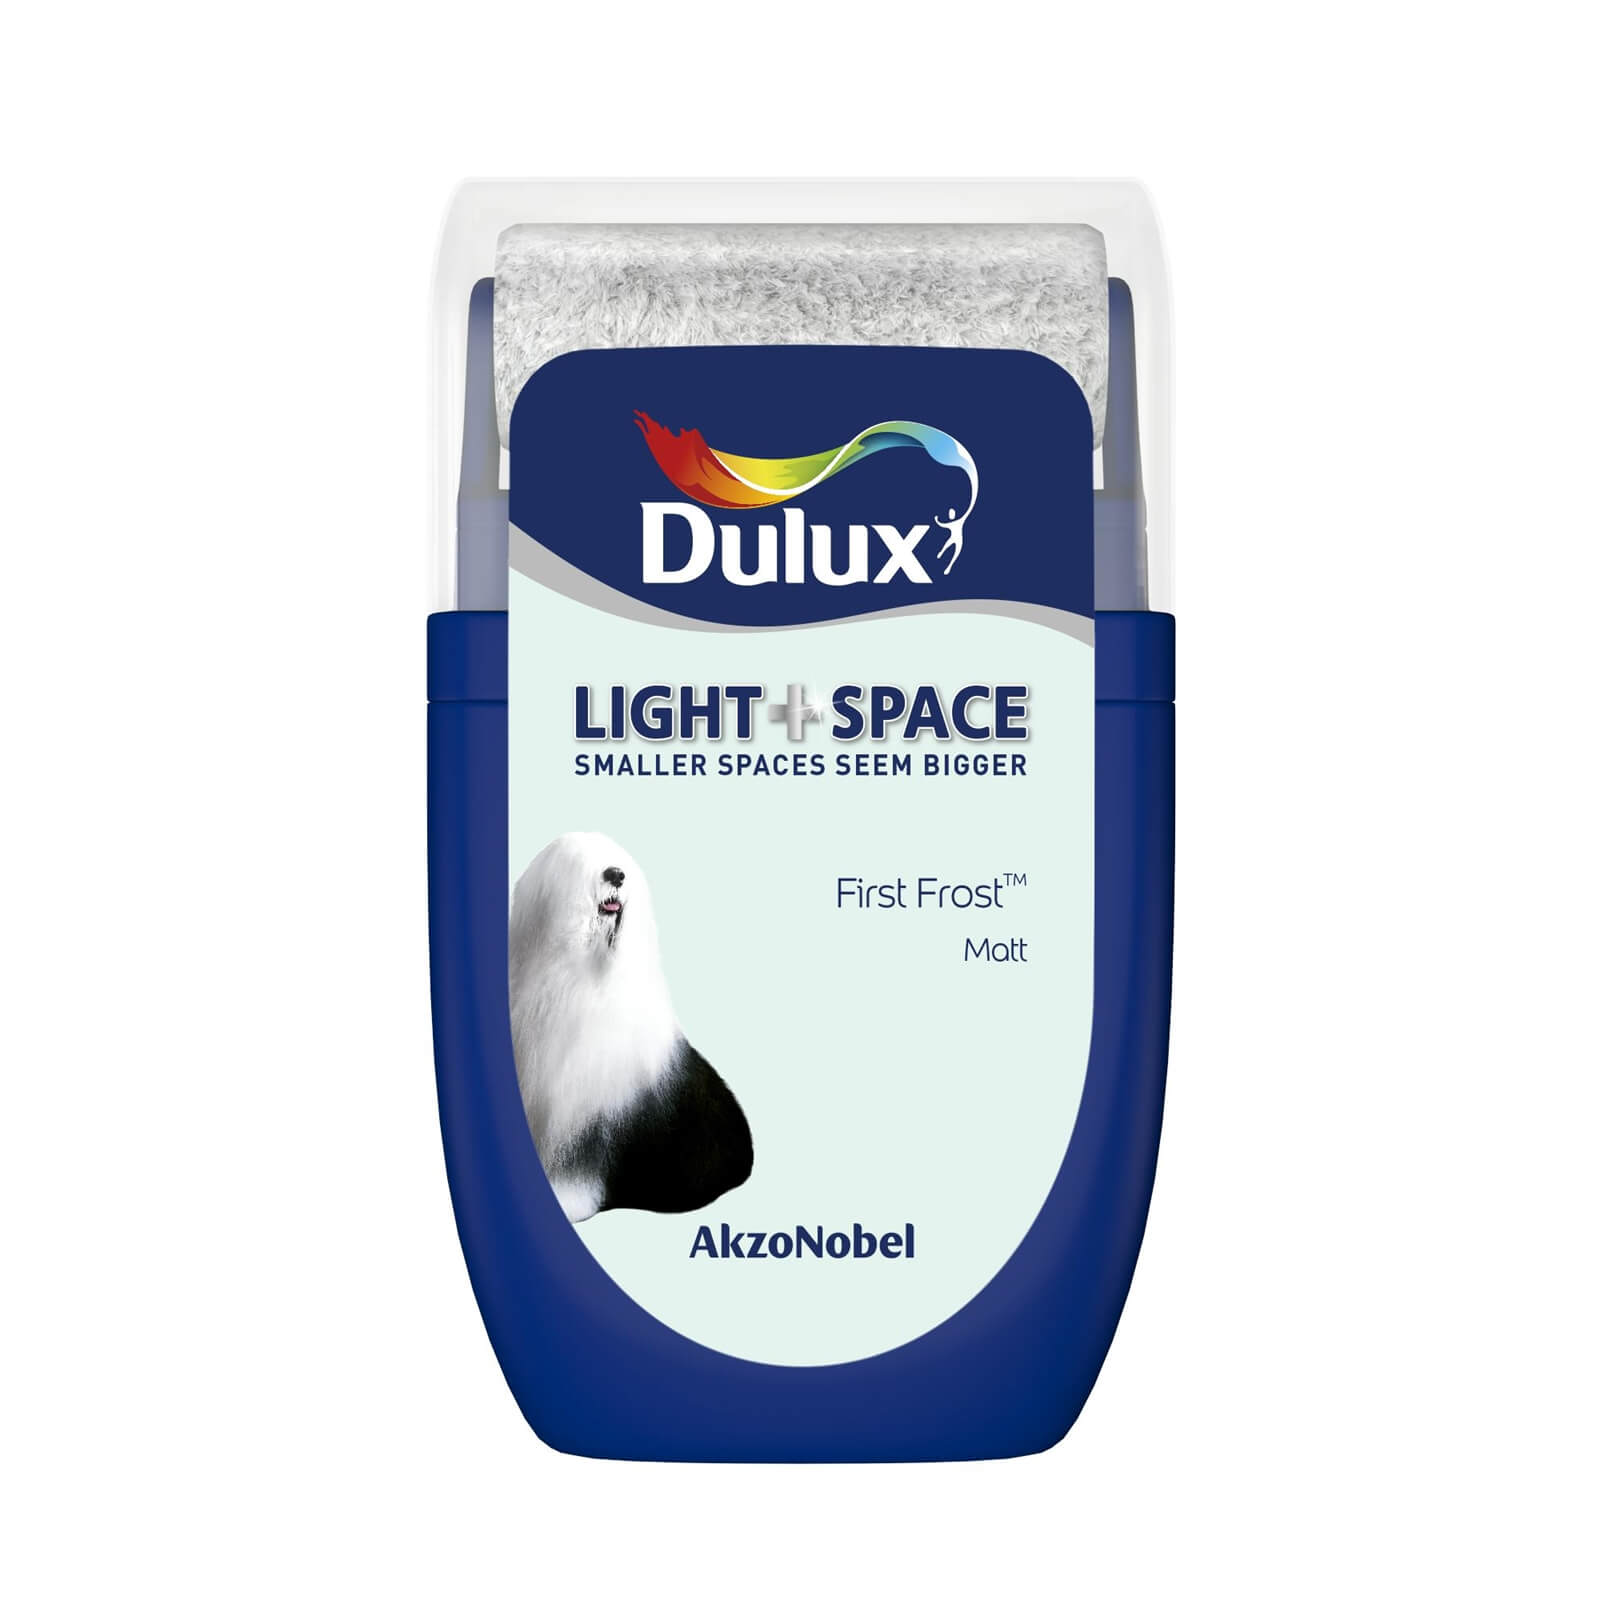 Dulux Light & Space Matt Emulsion Paint First Frost - Tester 30ml